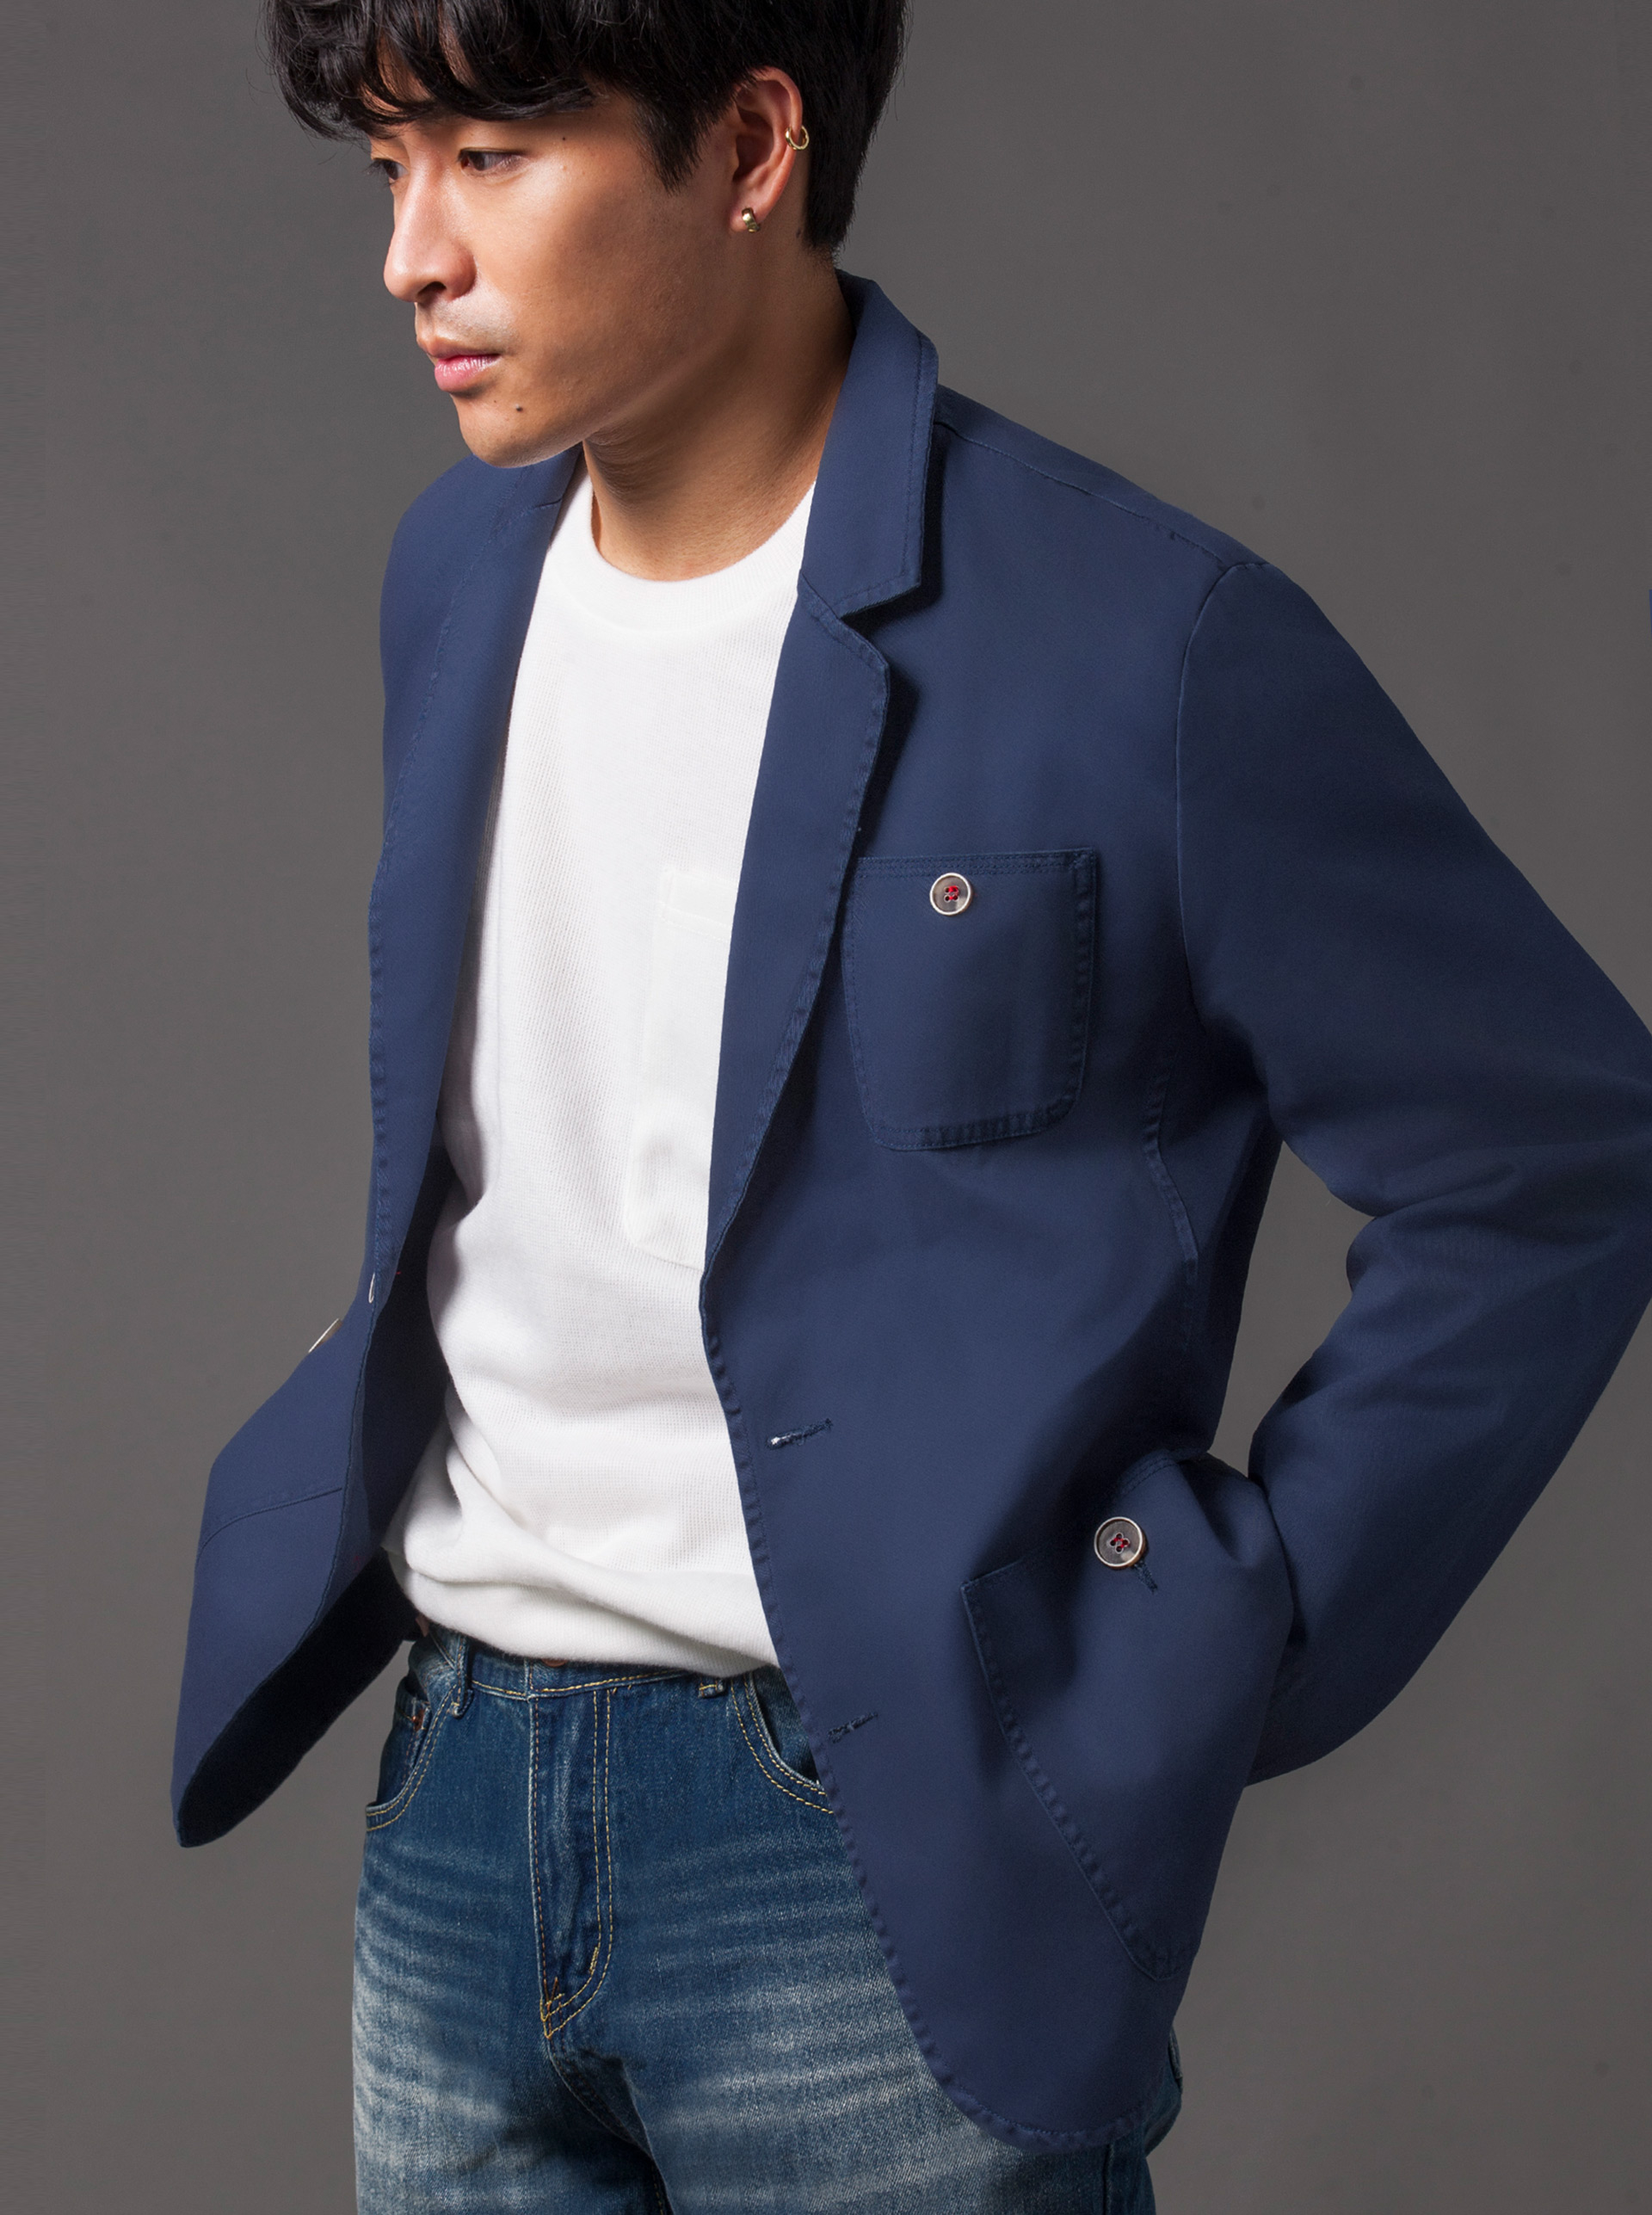 男款簡約休閒款西裝外套-藍 - 外套 - AVILAS/4REASON 提領時尚